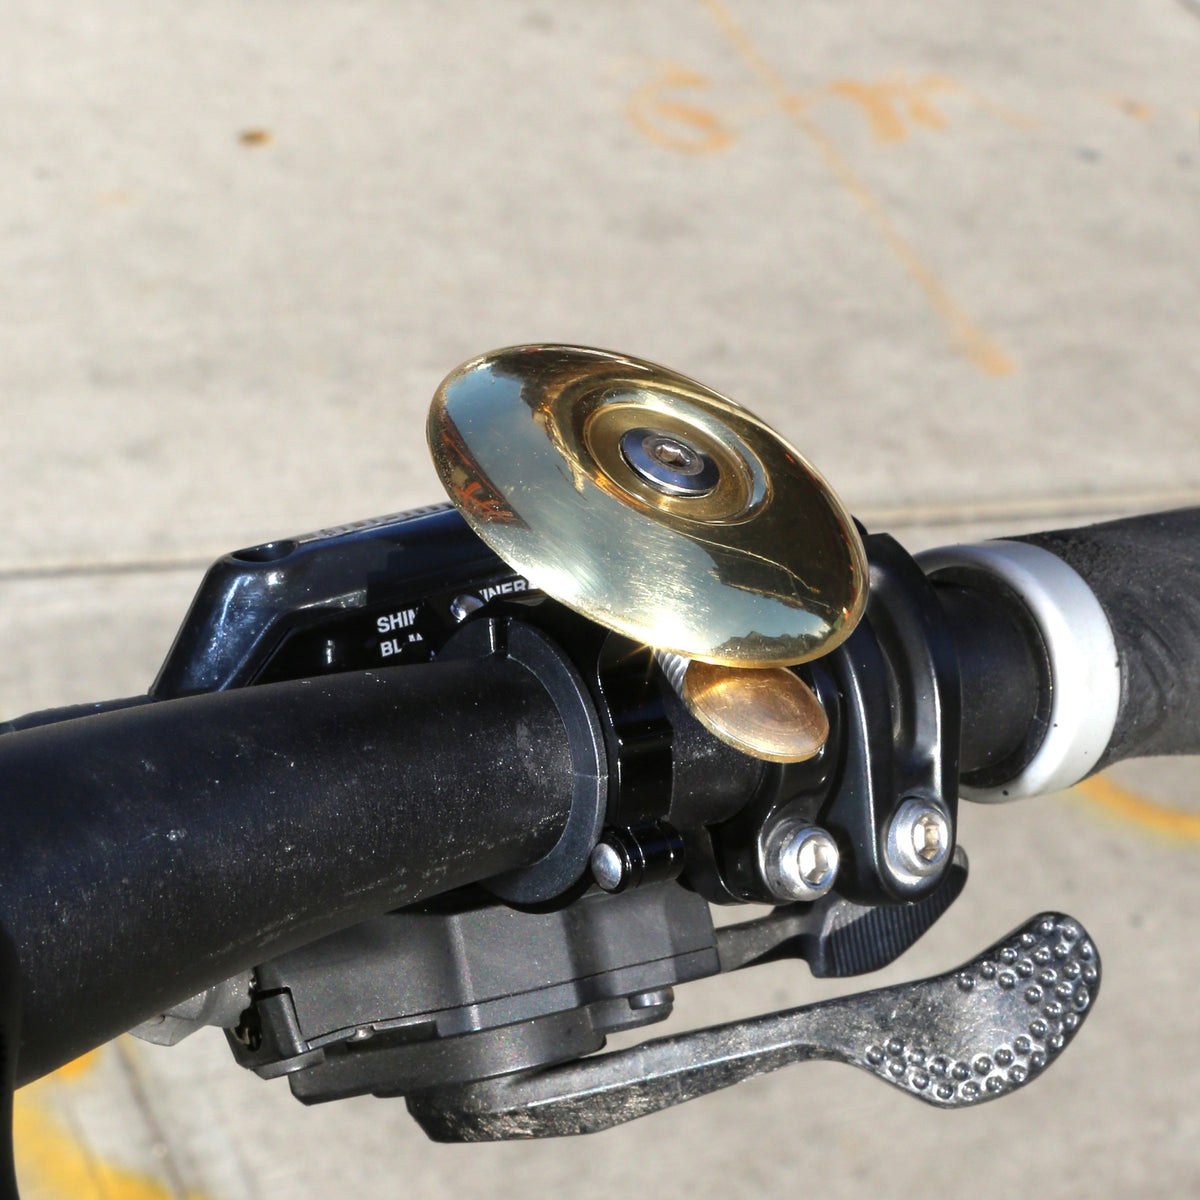 kikkerland bike bell